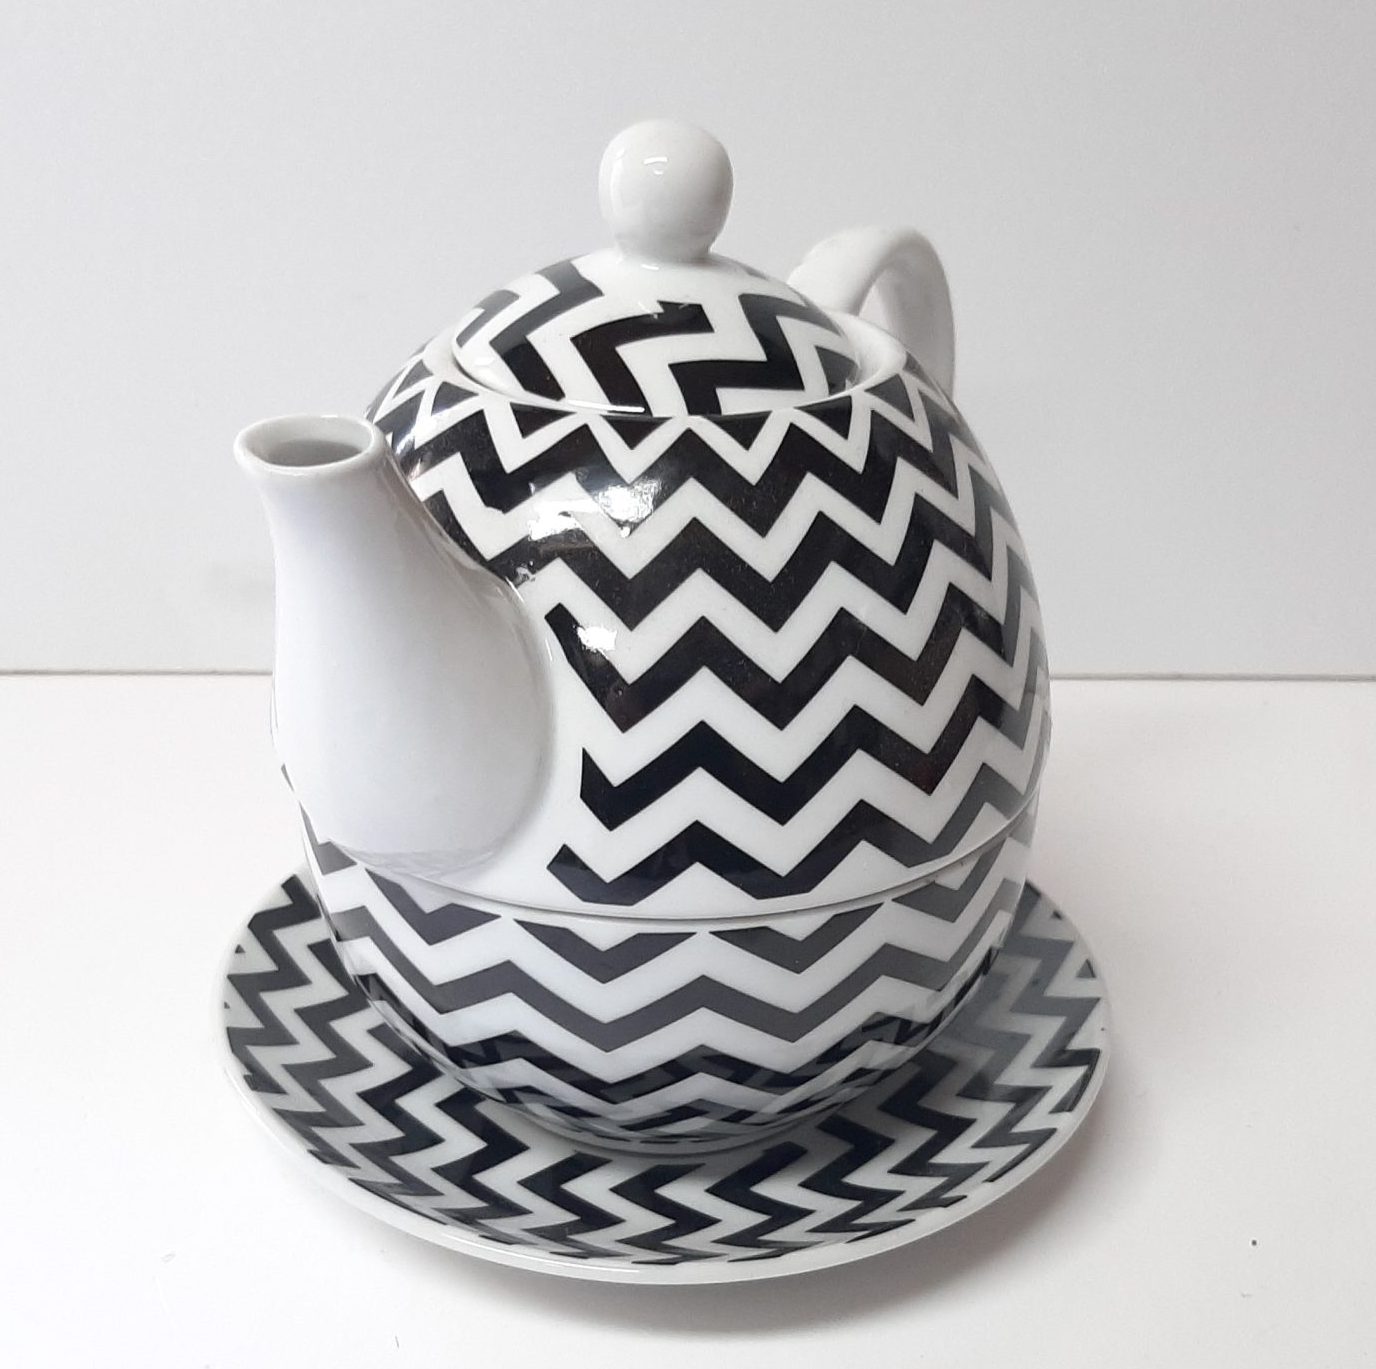 In de genade van verzekering hoesten Mooie theepot set, tea for one, gemaakt van keramiek, wit met zwarte  hoekige retro print